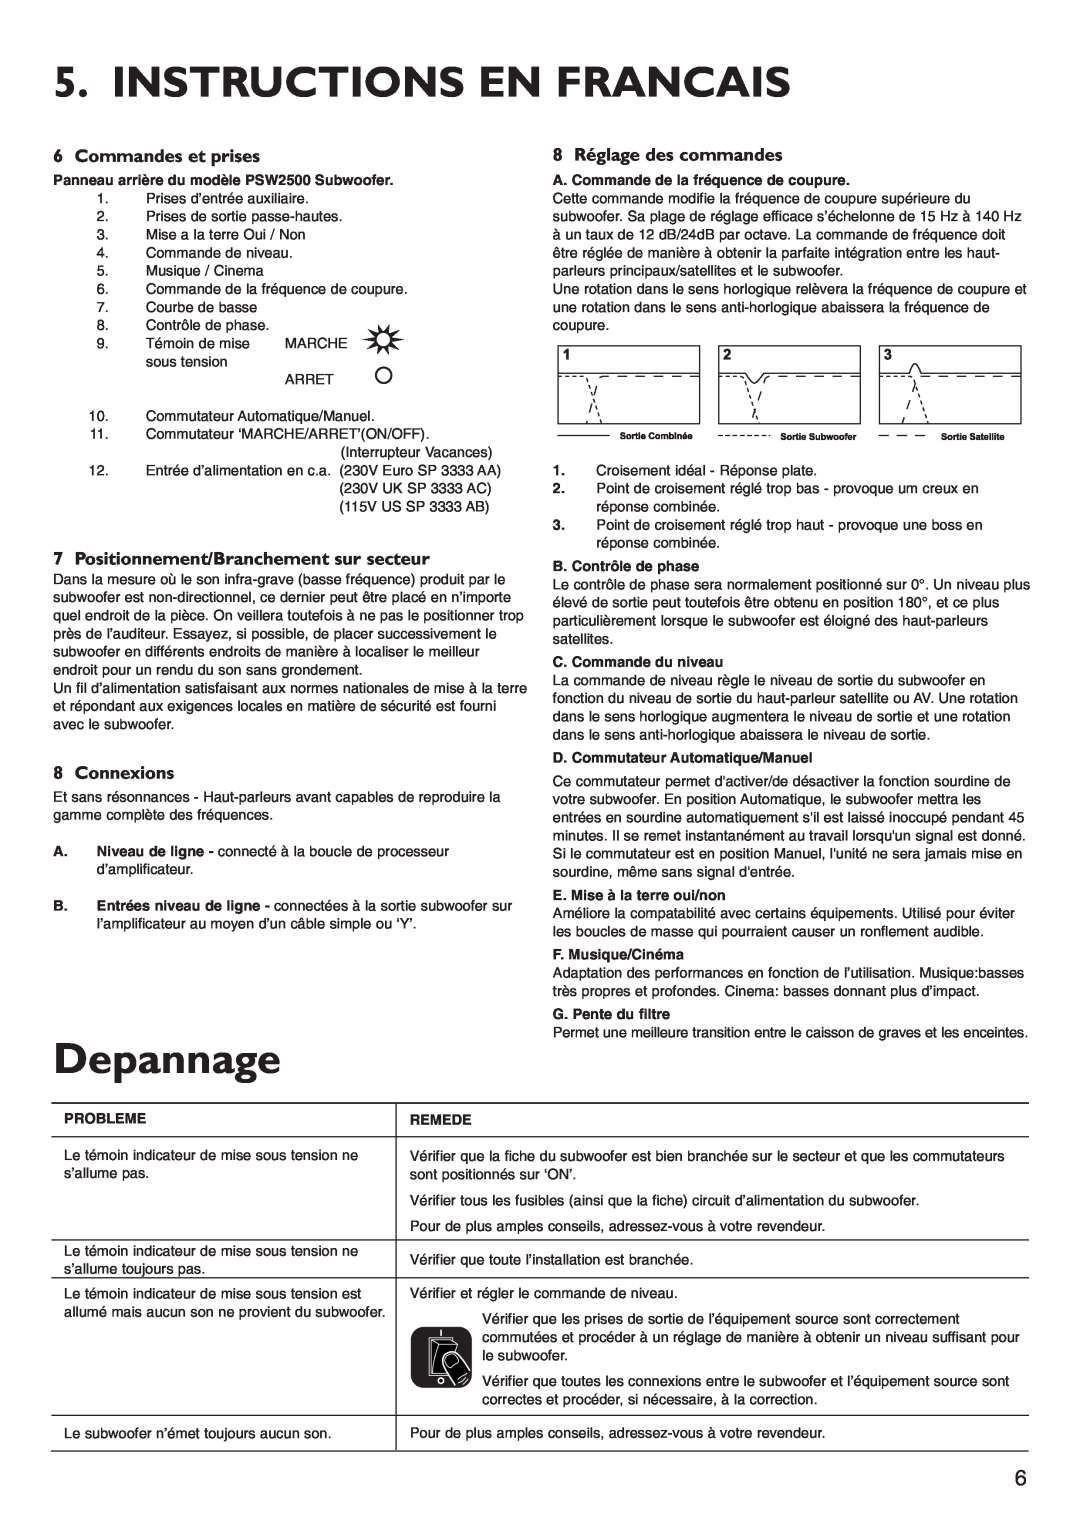 KEF Audio PSW2500 Instructions En Francais, Depannage, Commandes et prises, 8 Réglage des commandes, Connexions 